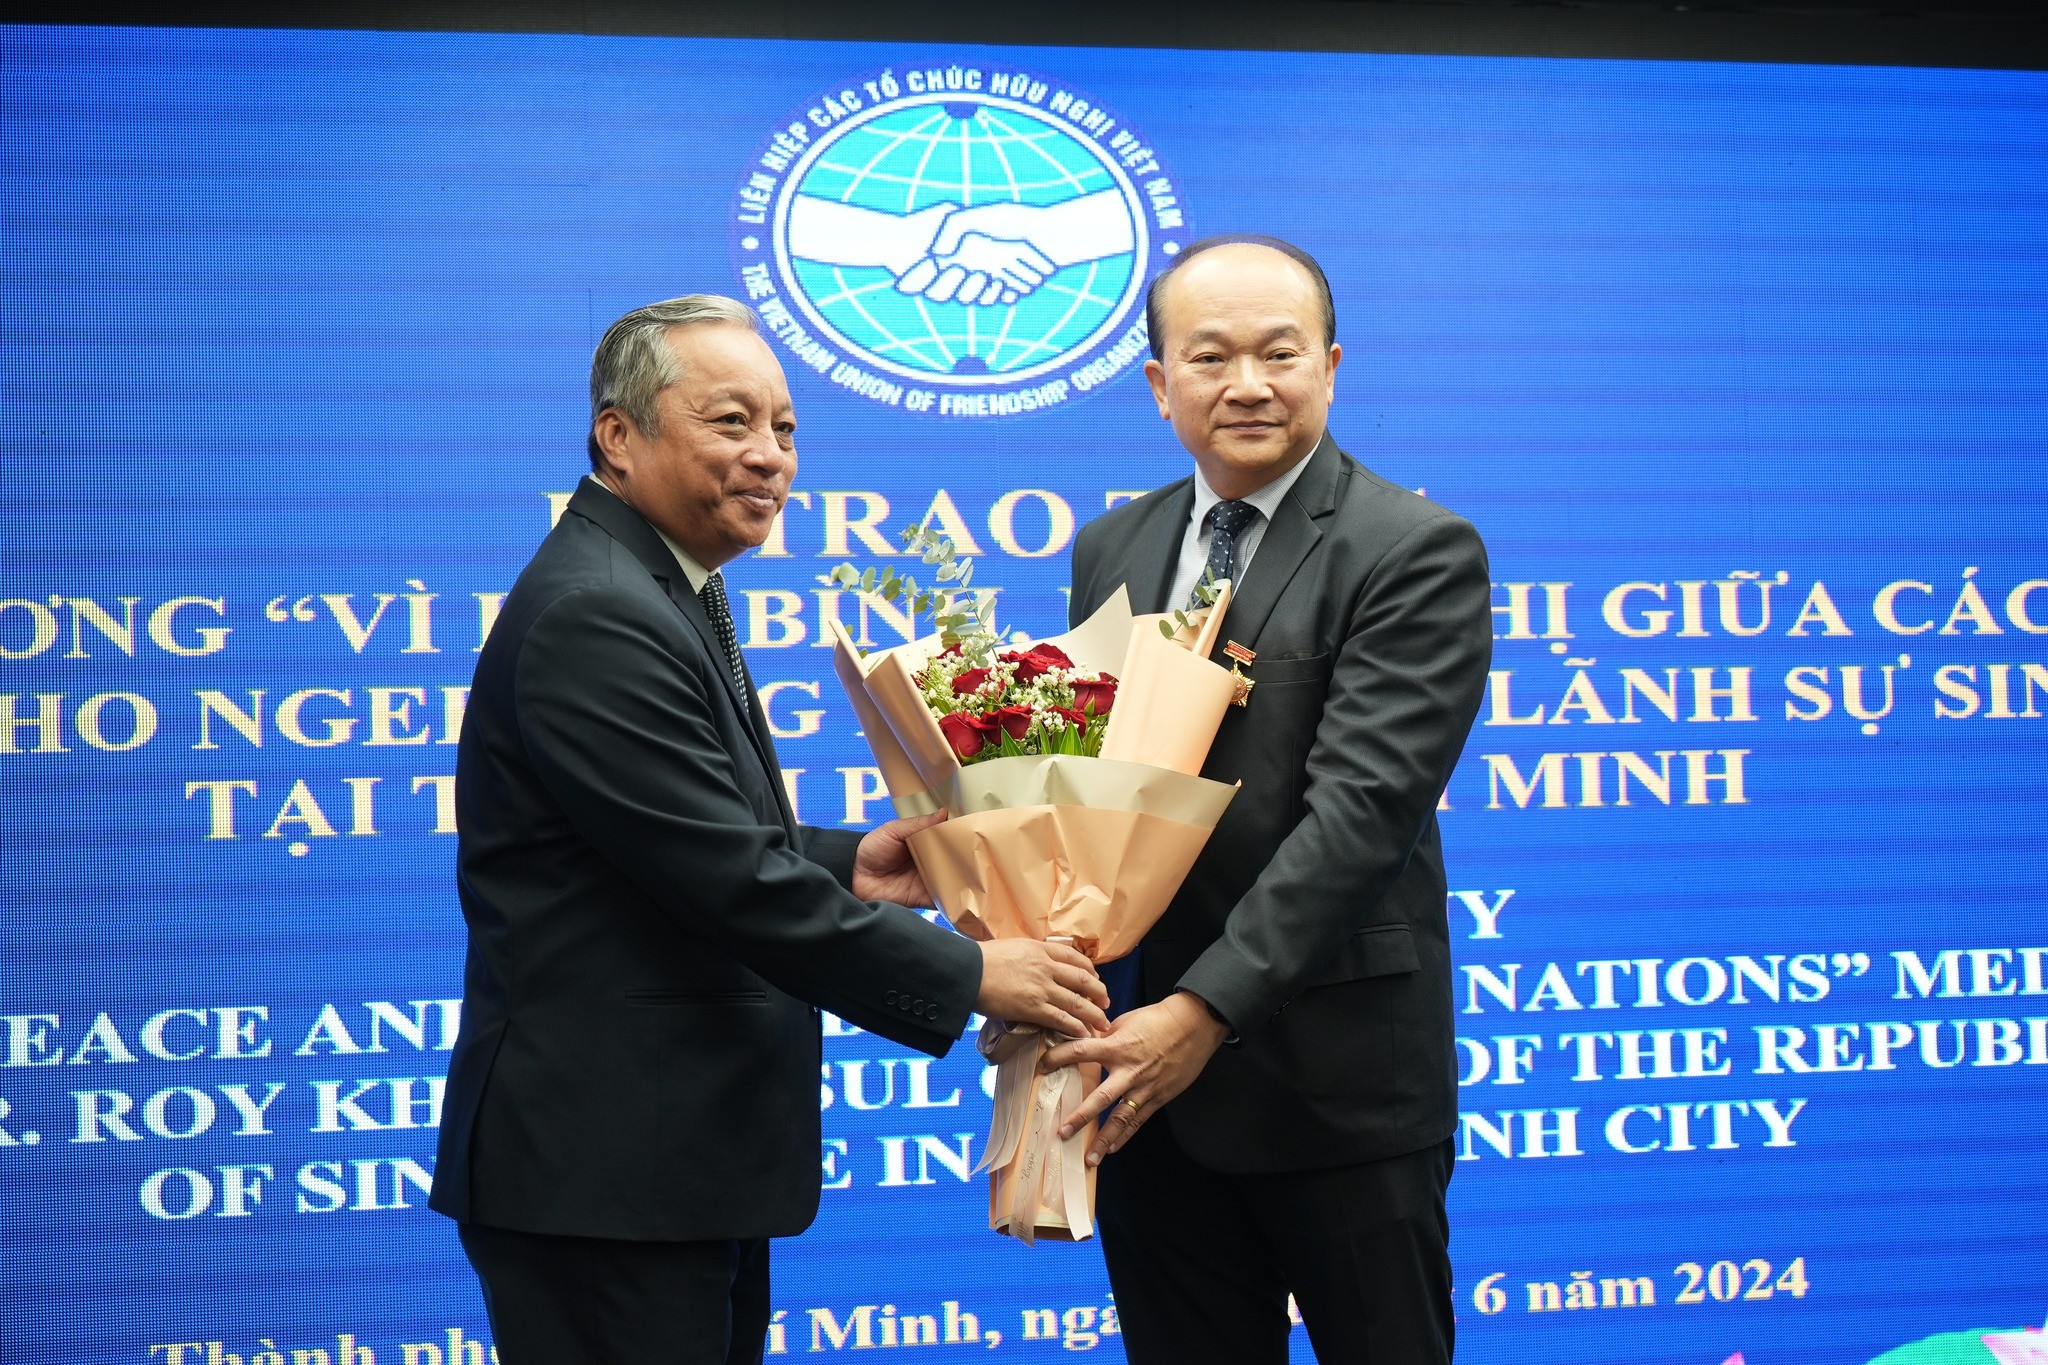 Chủ tịch Liên hiệp các tổ chức hữu nghị TPHCM Đỗ Việt Hà trao kỷ niệm chương và tặng hoa chúc mừng ông Kho Ngee Seng Roy, Tổng lãnh sự Singapore tại TP.HCM. (Ảnh: hufo.hochiminhcity.gov.vn)